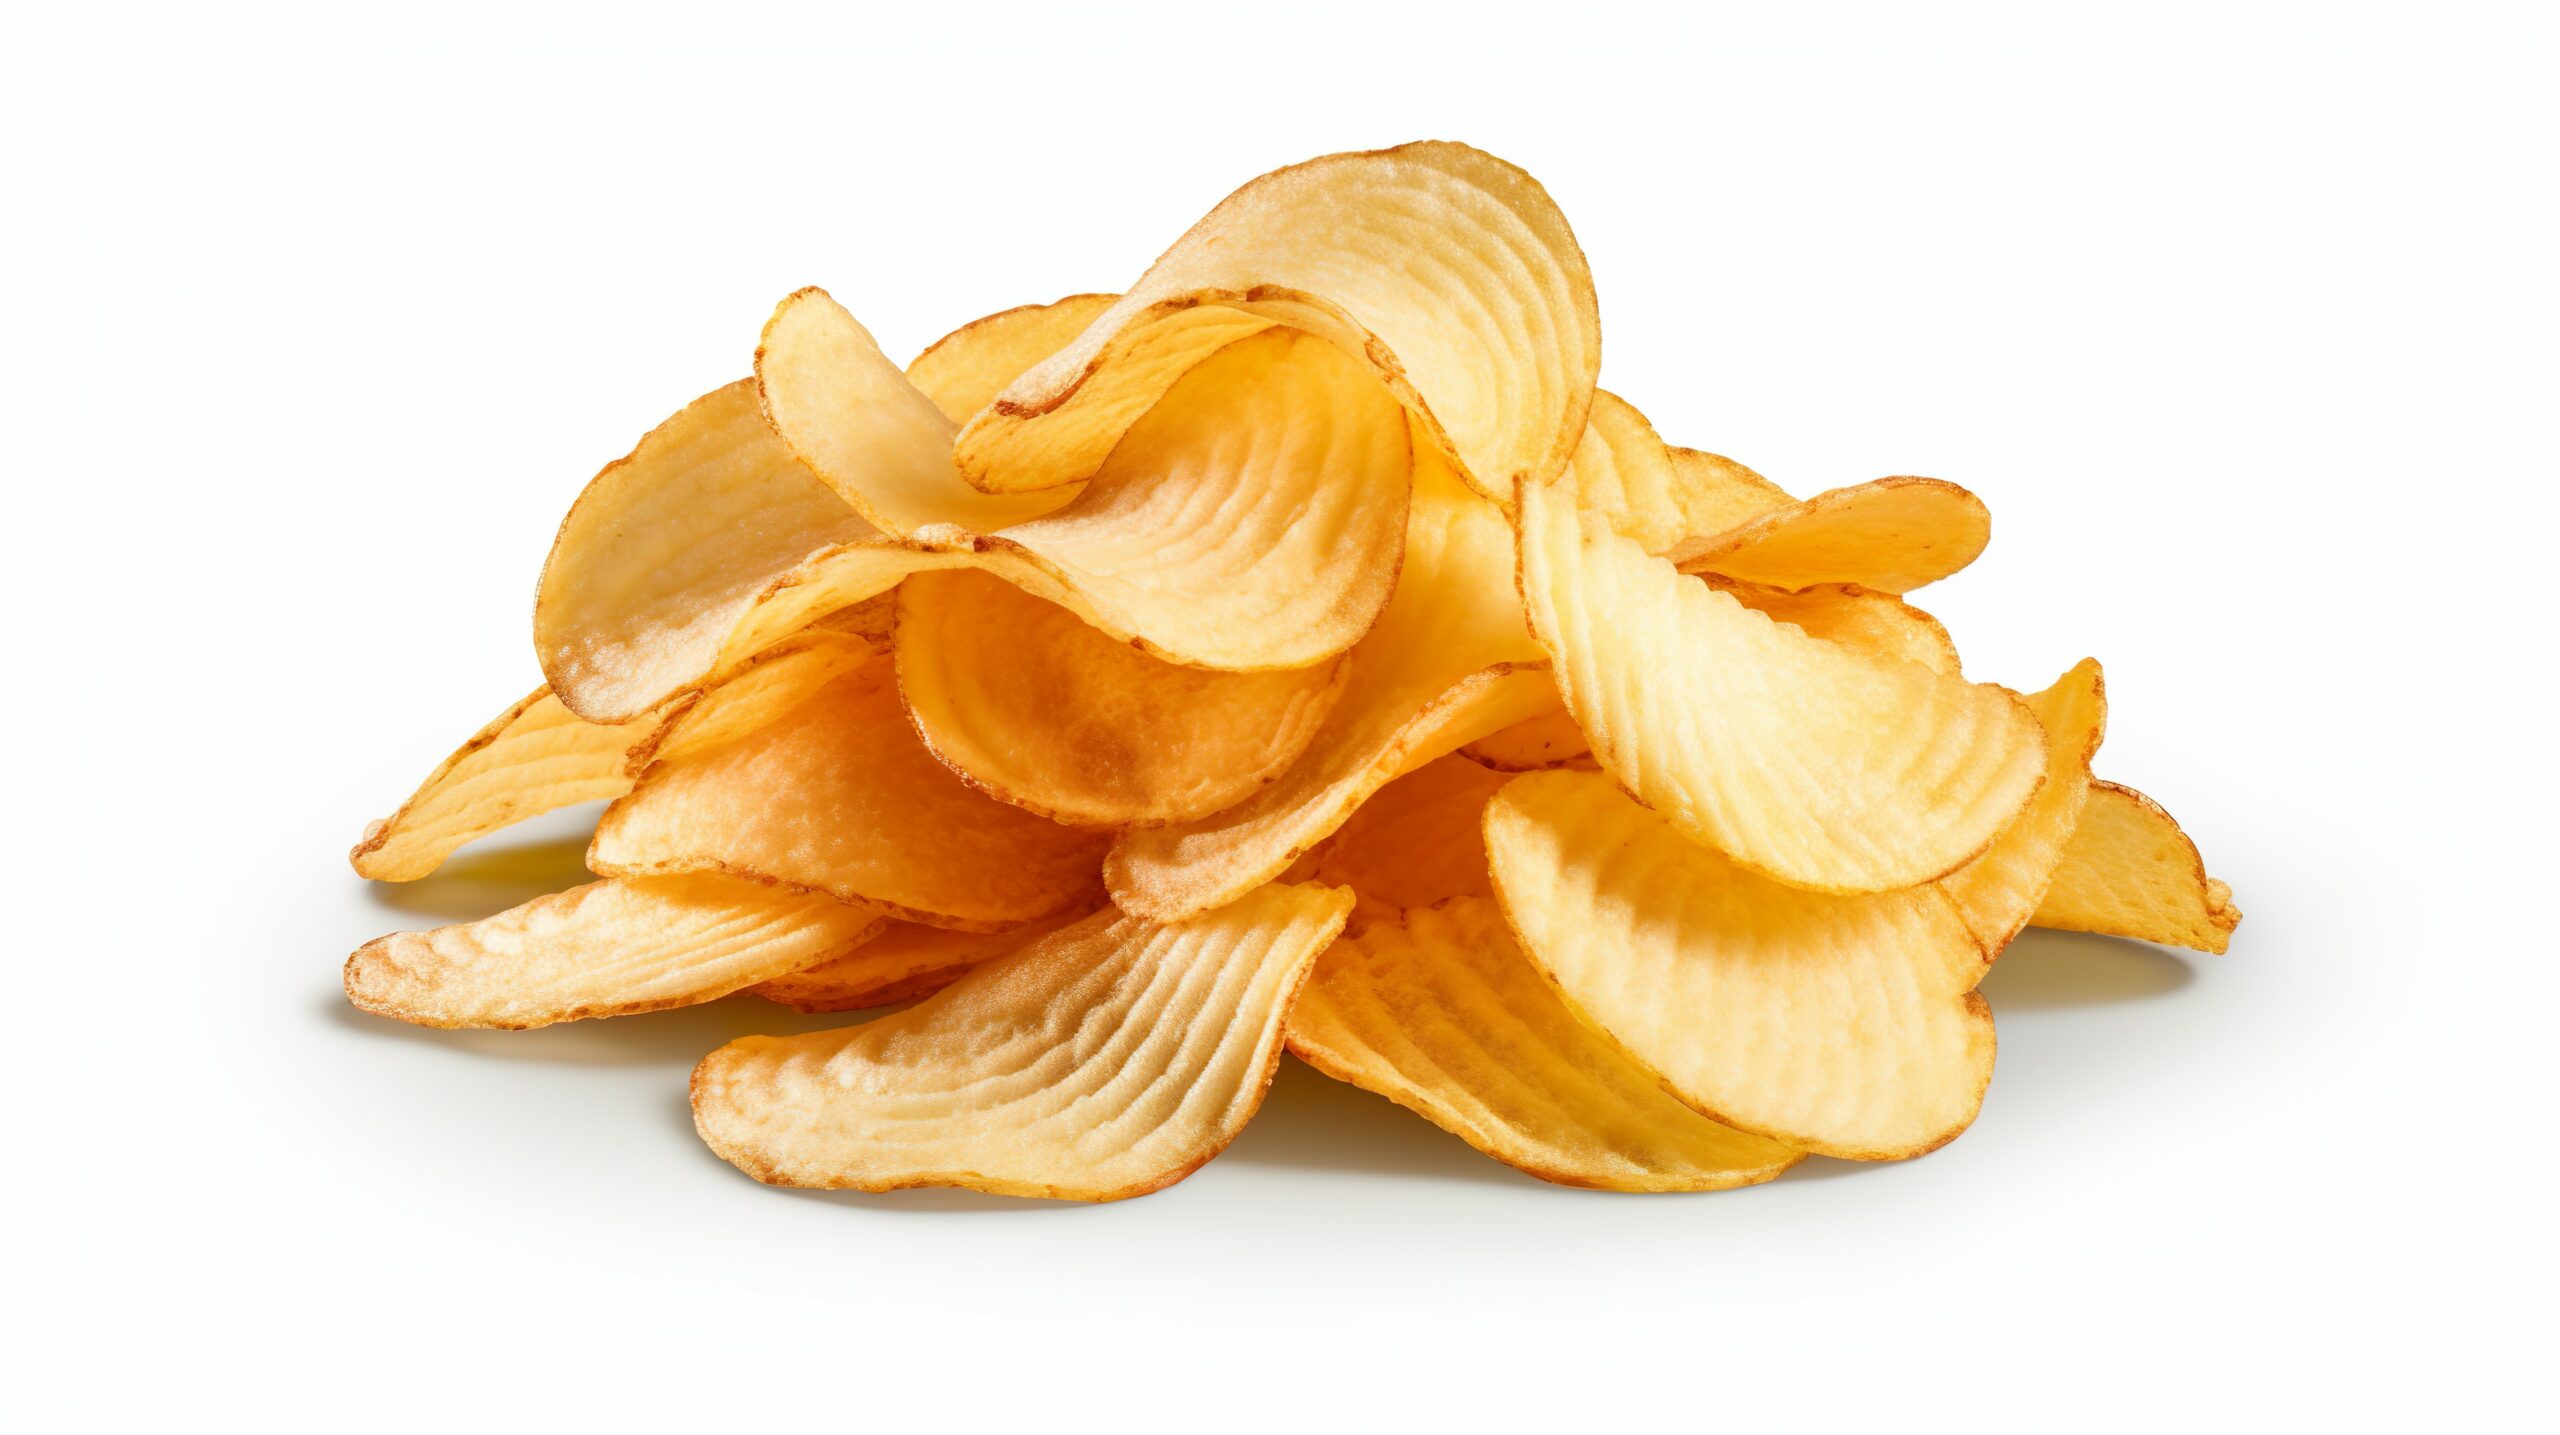 Kartoffelchips gehören zu den beliebtesten Knabbereien. Foto ©Jodie stock adobe